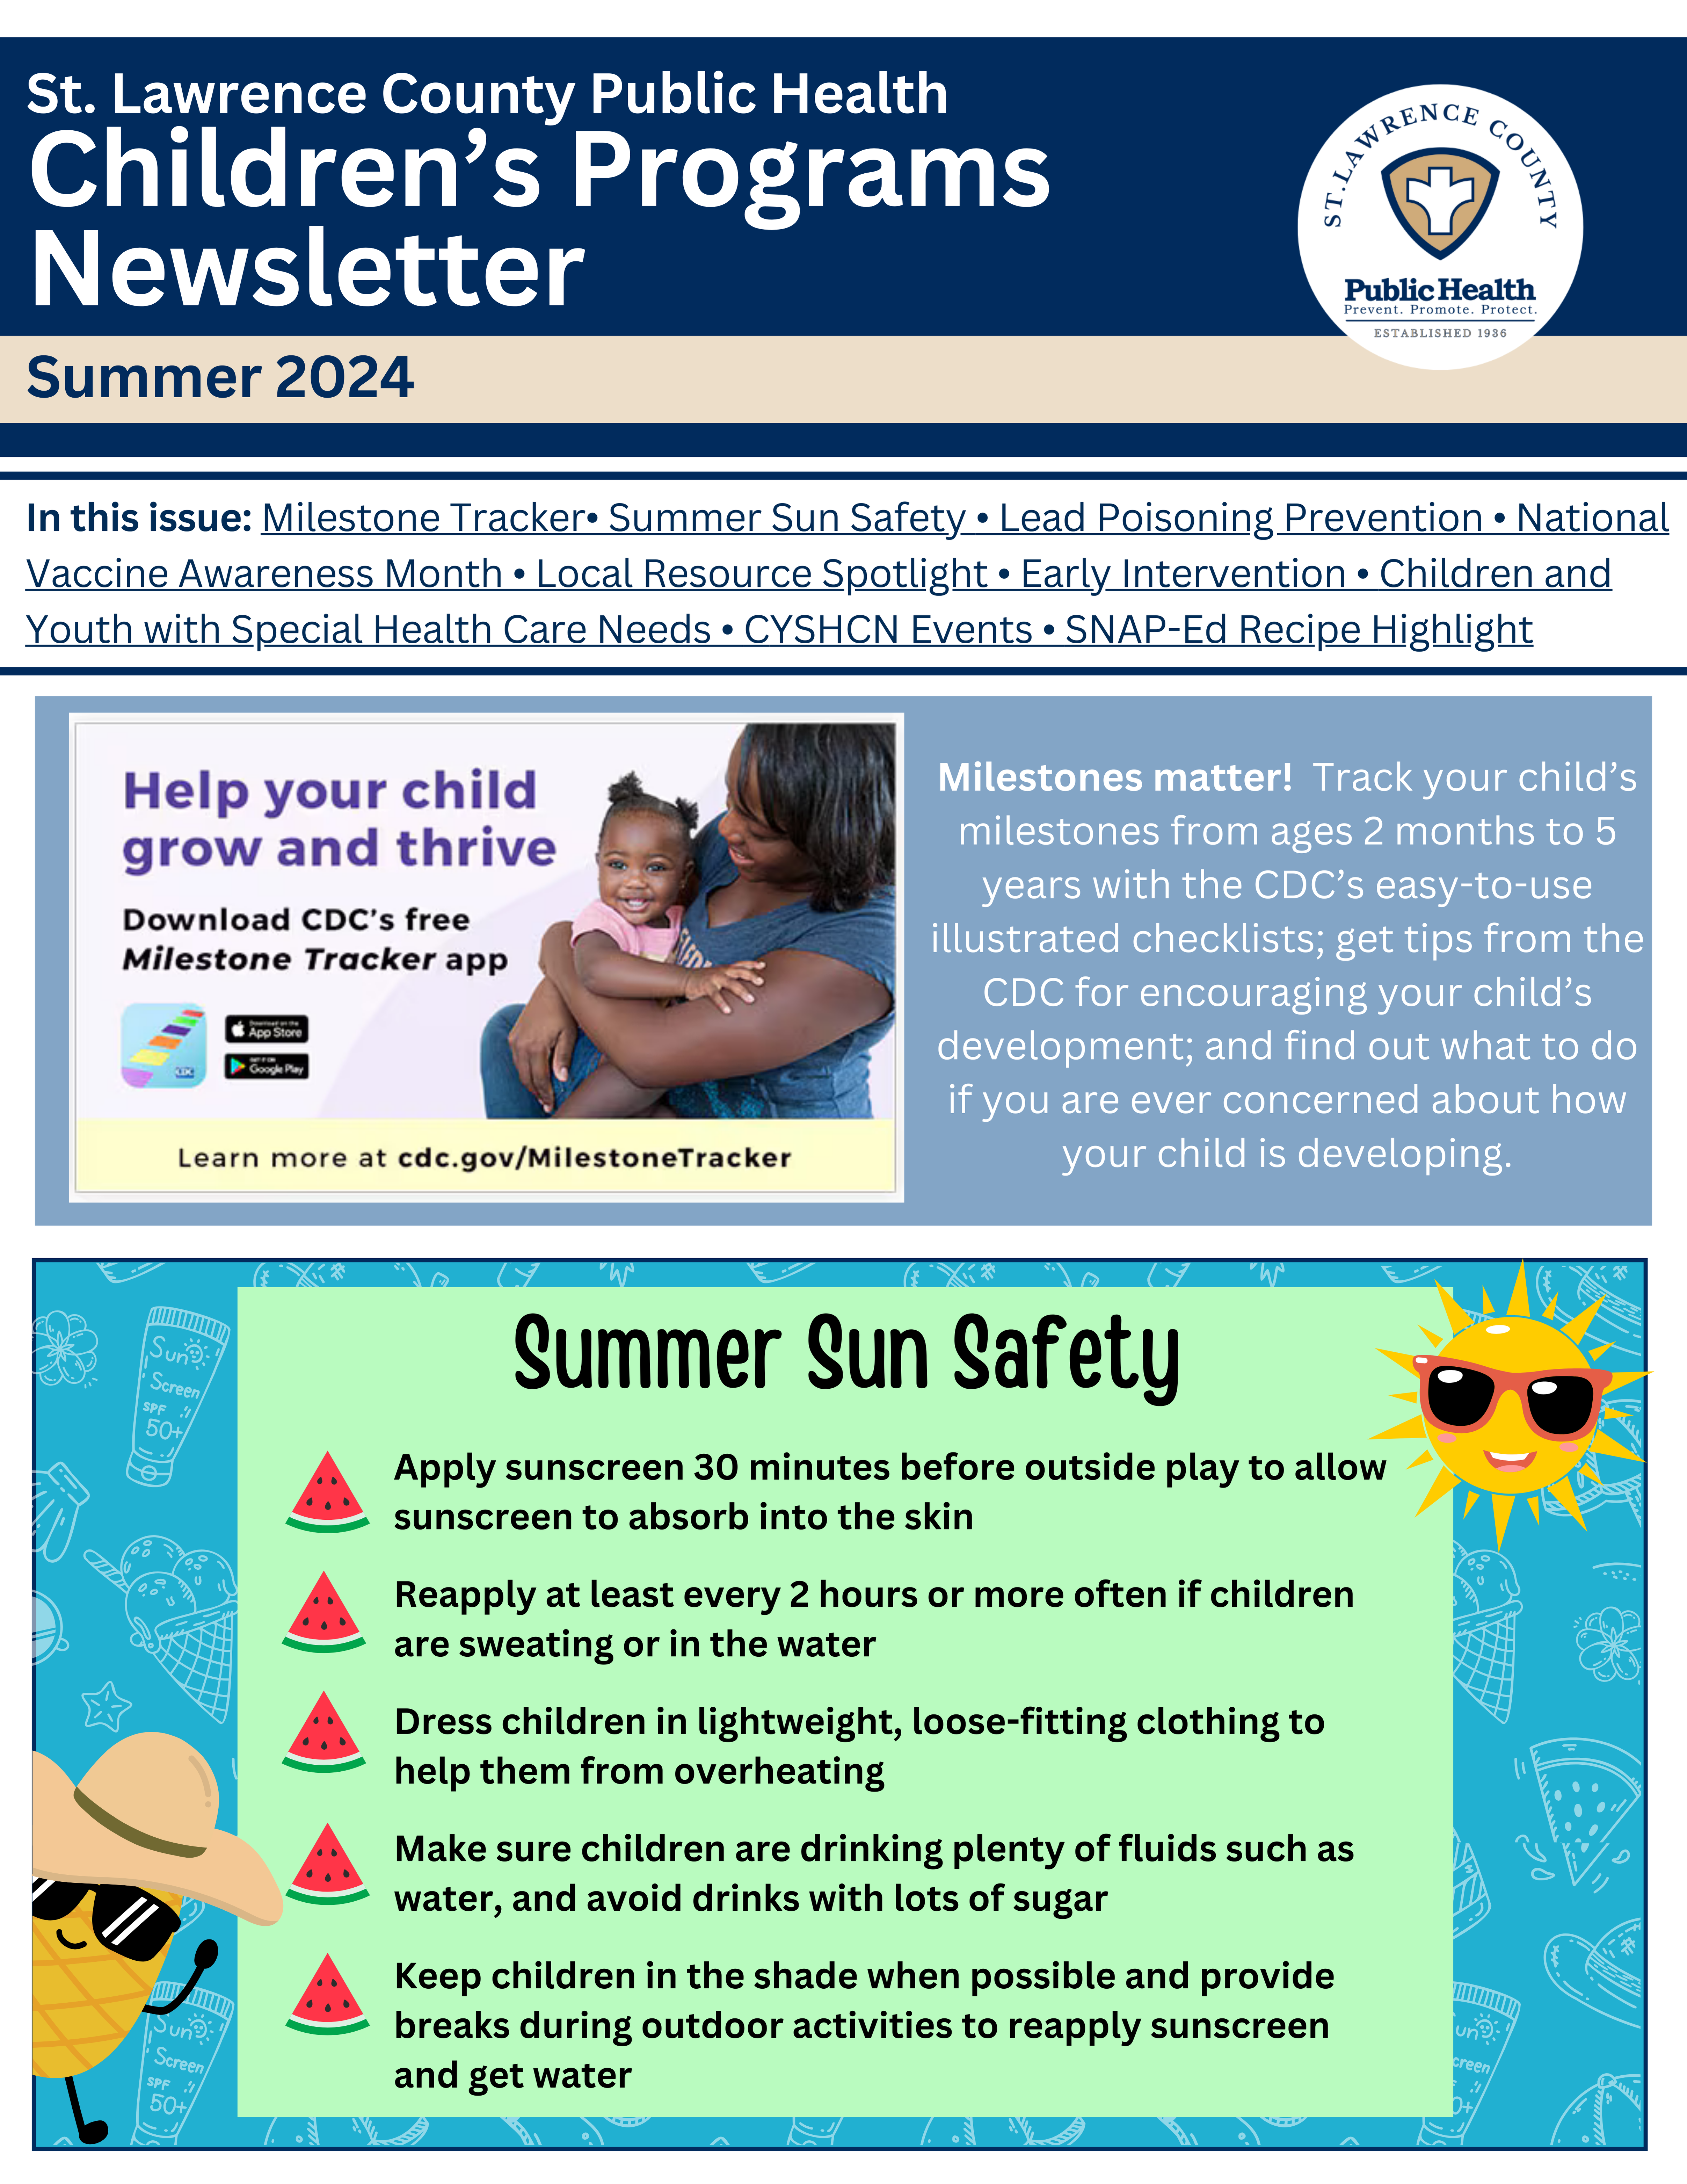 Summer 2024 Children's Programs Newsletter